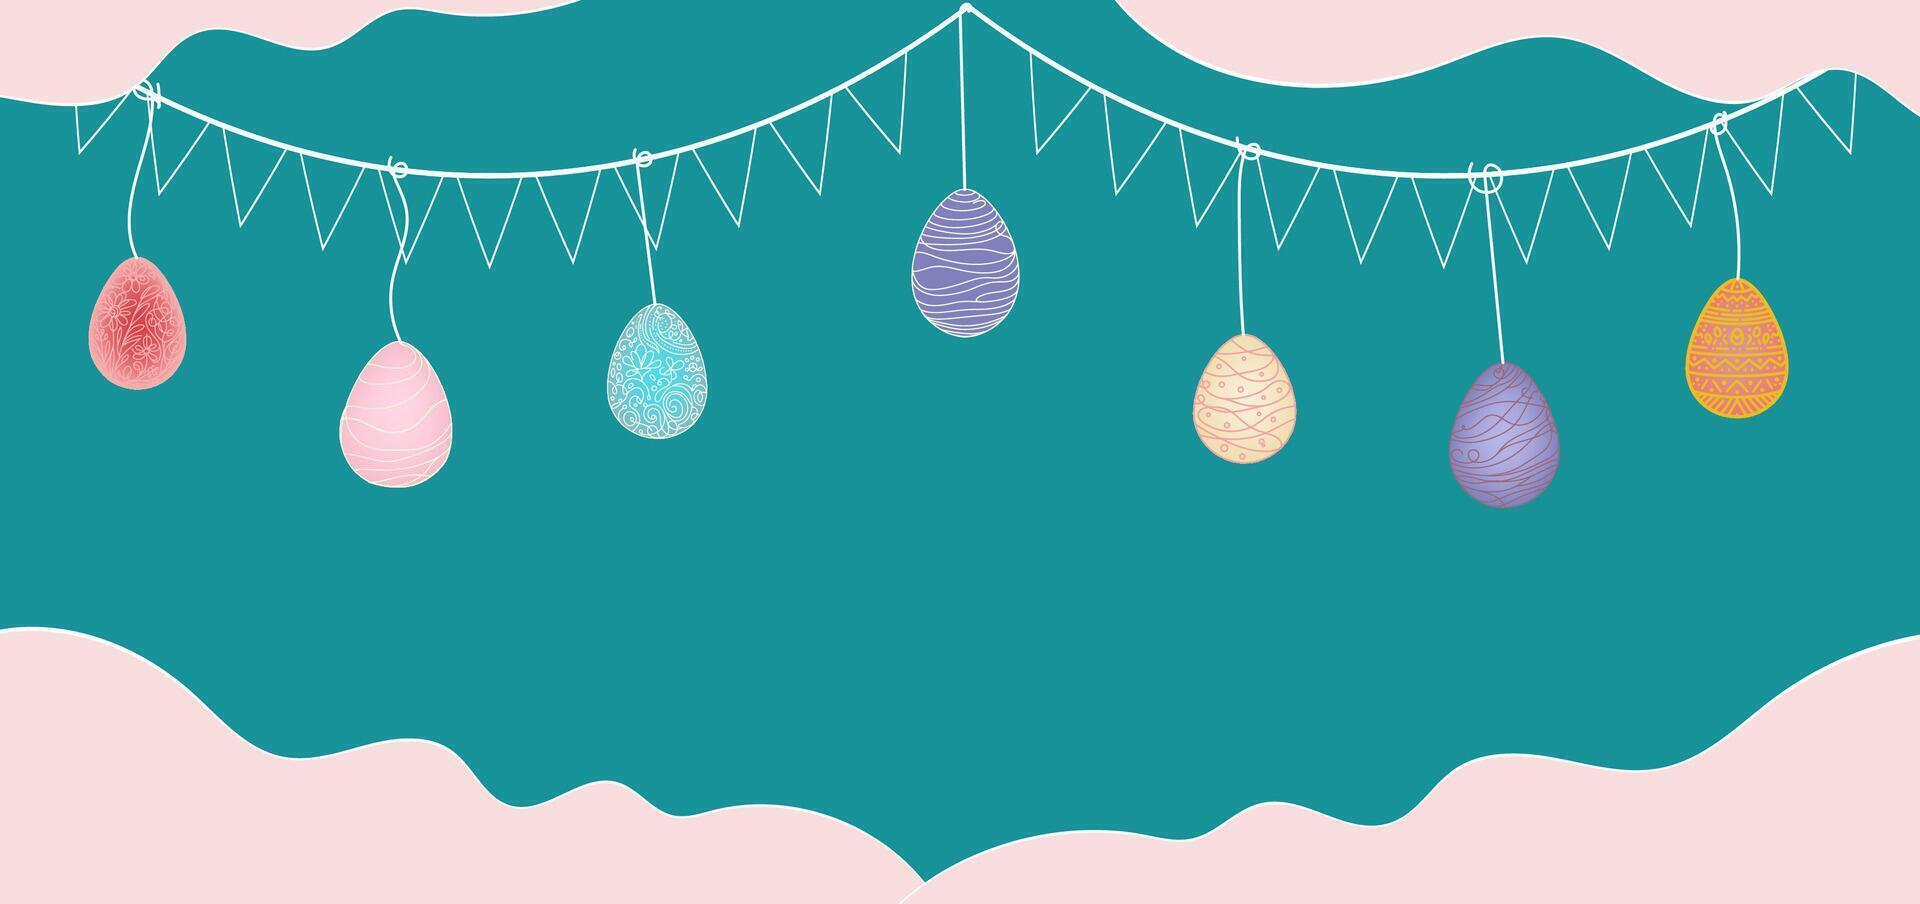 uno continuo mano disegno Pasqua uovo scarabocchio decorato striscione, manifesto. design per coniglio Pasqua uovo su bianca sfondo vettore